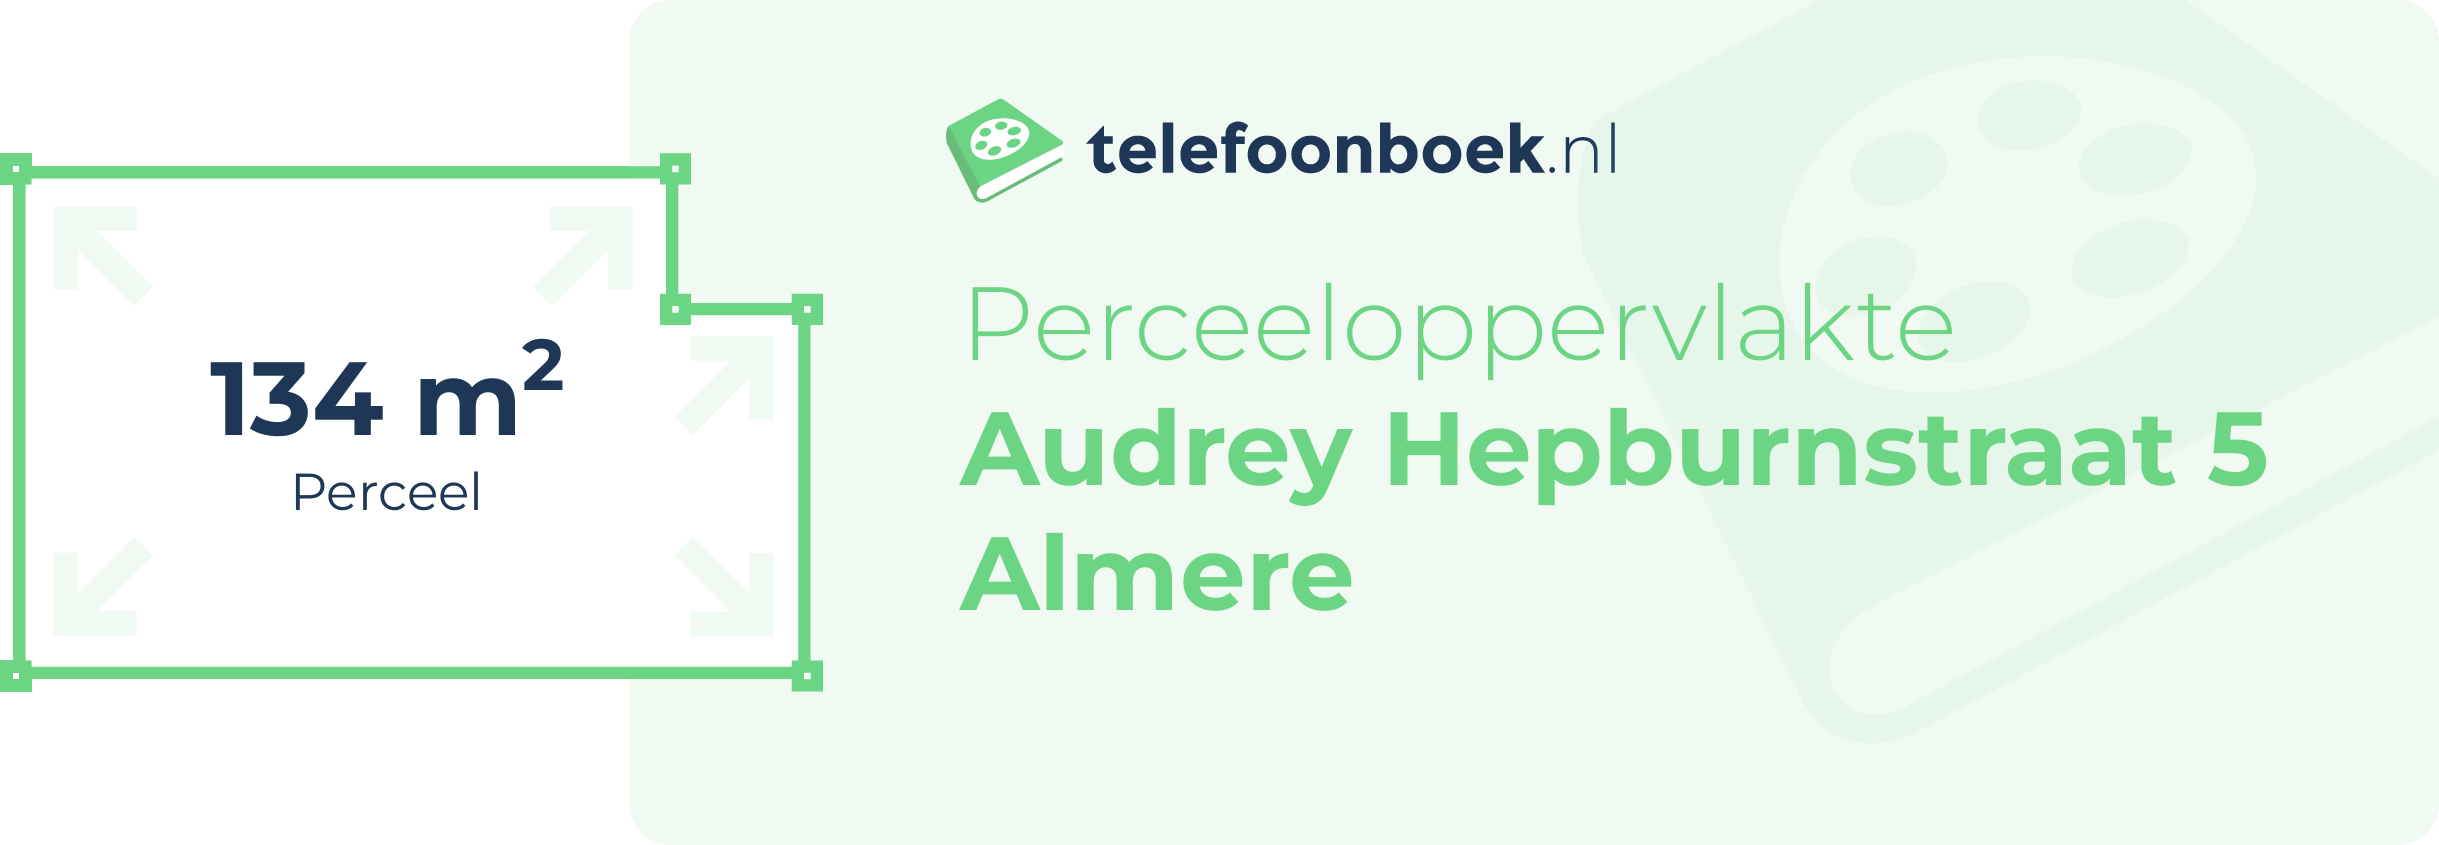 Perceeloppervlakte Audrey Hepburnstraat 5 Almere